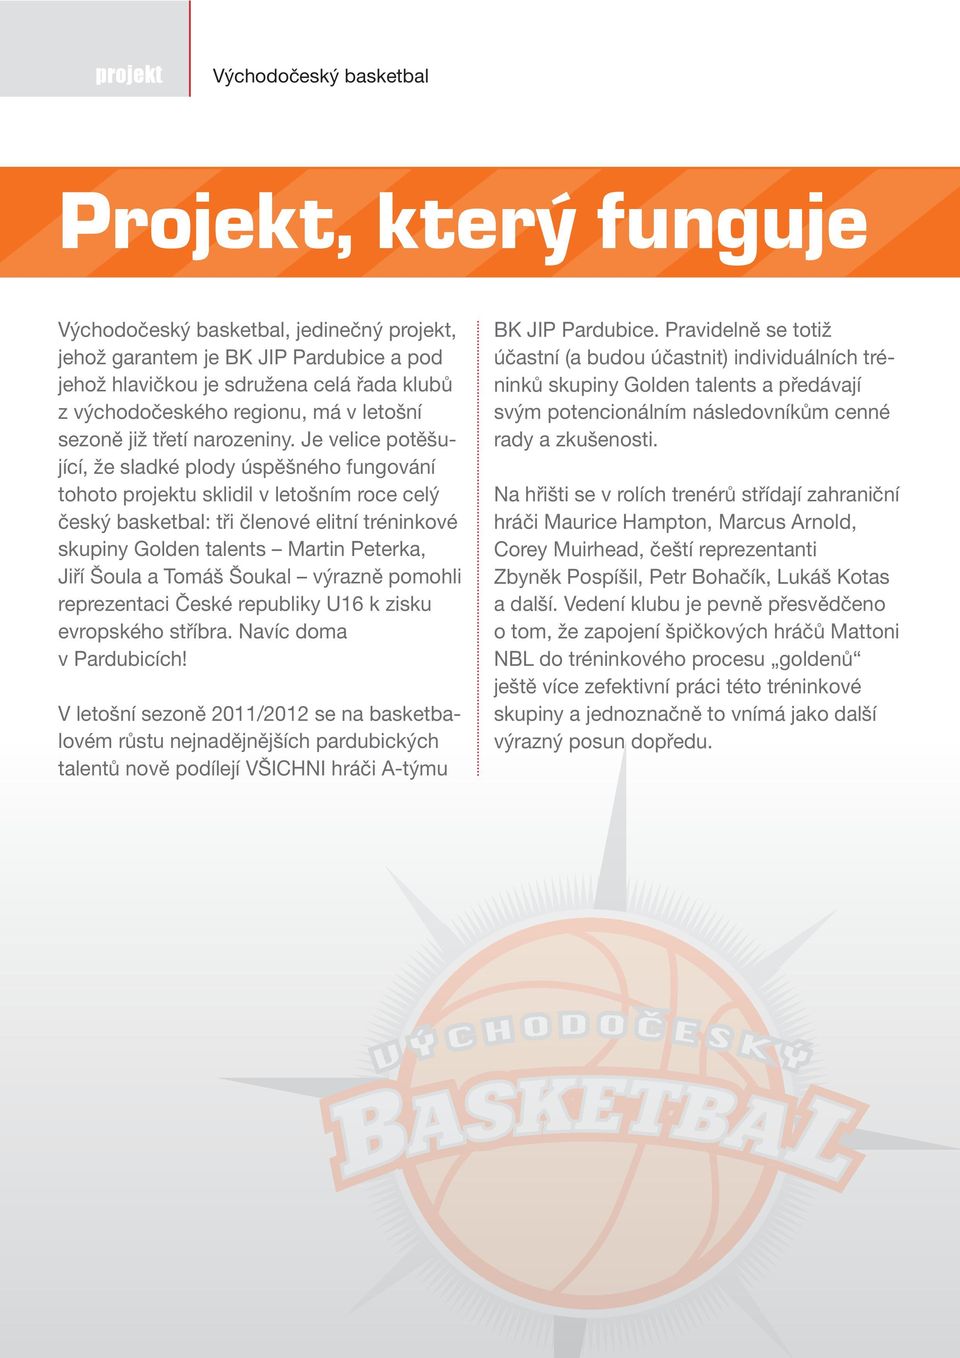 Je velice potěšující, že sladké plody úspěšného fungování tohoto projektu sklidil v letošním roce celý český basketbal: tři členové elitní tréninkové skupiny Golden talents Martin Peterka, Jiří Šoula